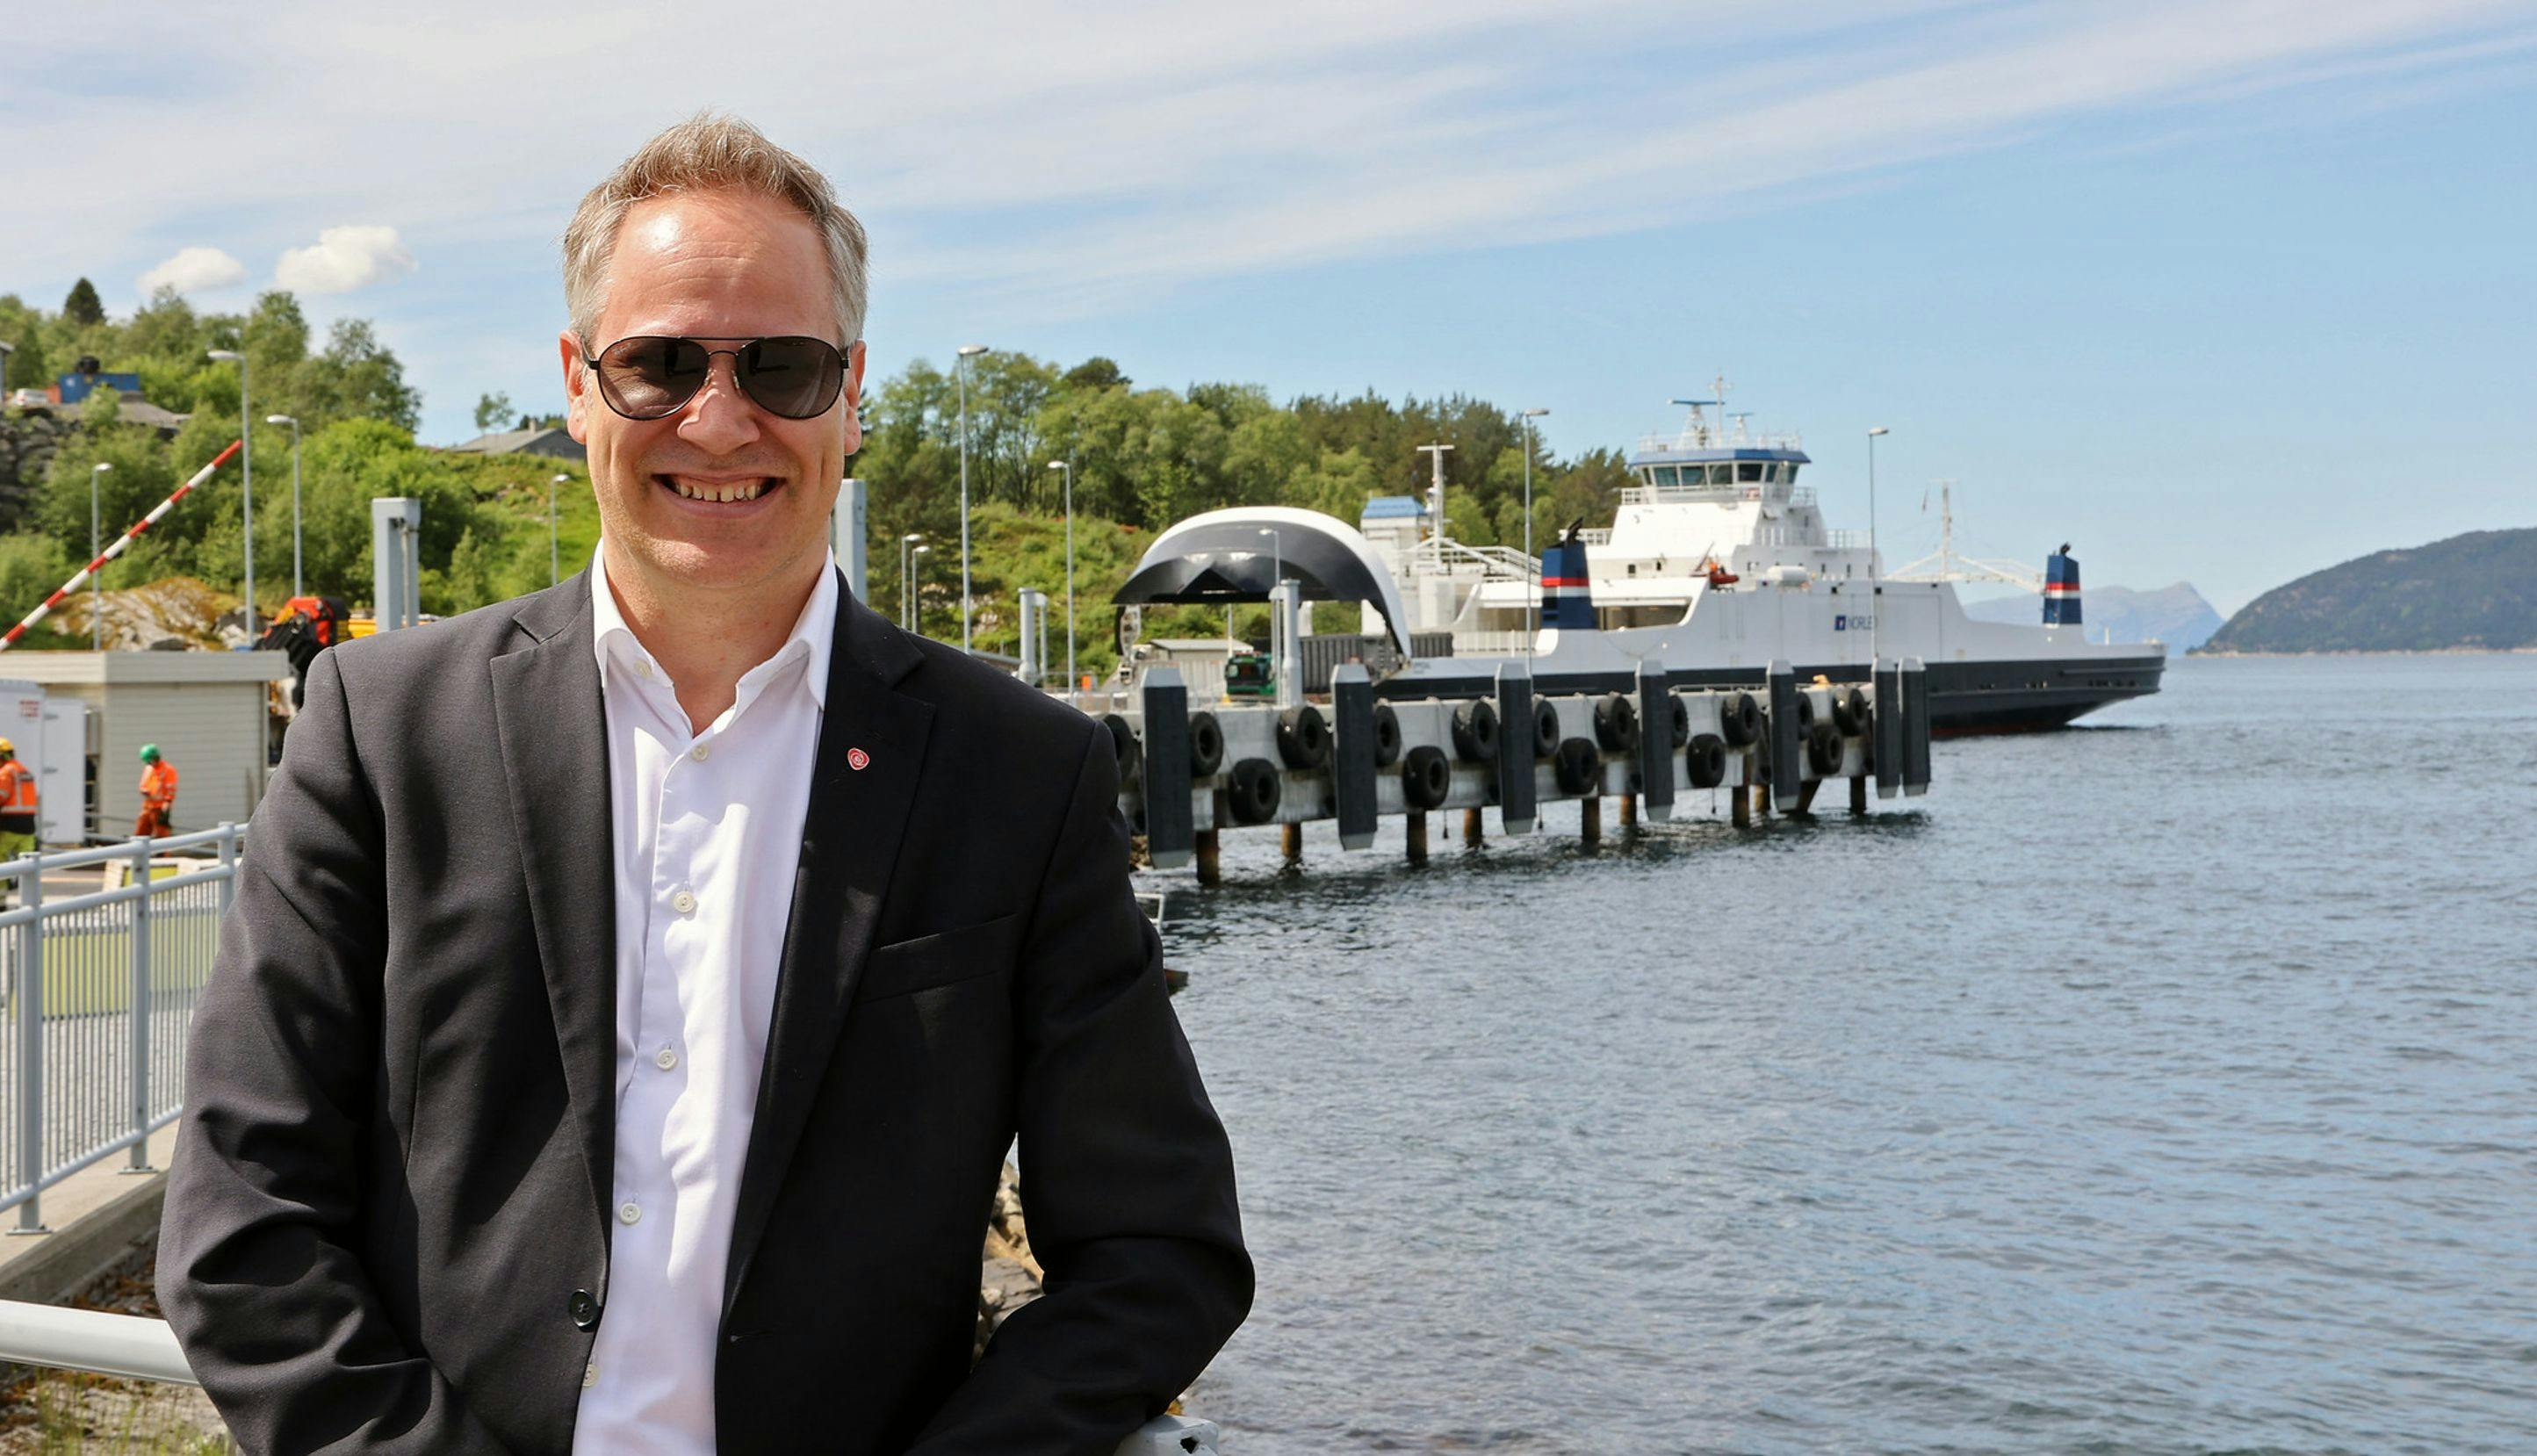 Jon-Ivar Nygård med fjord og ferje i bakgrunnen.